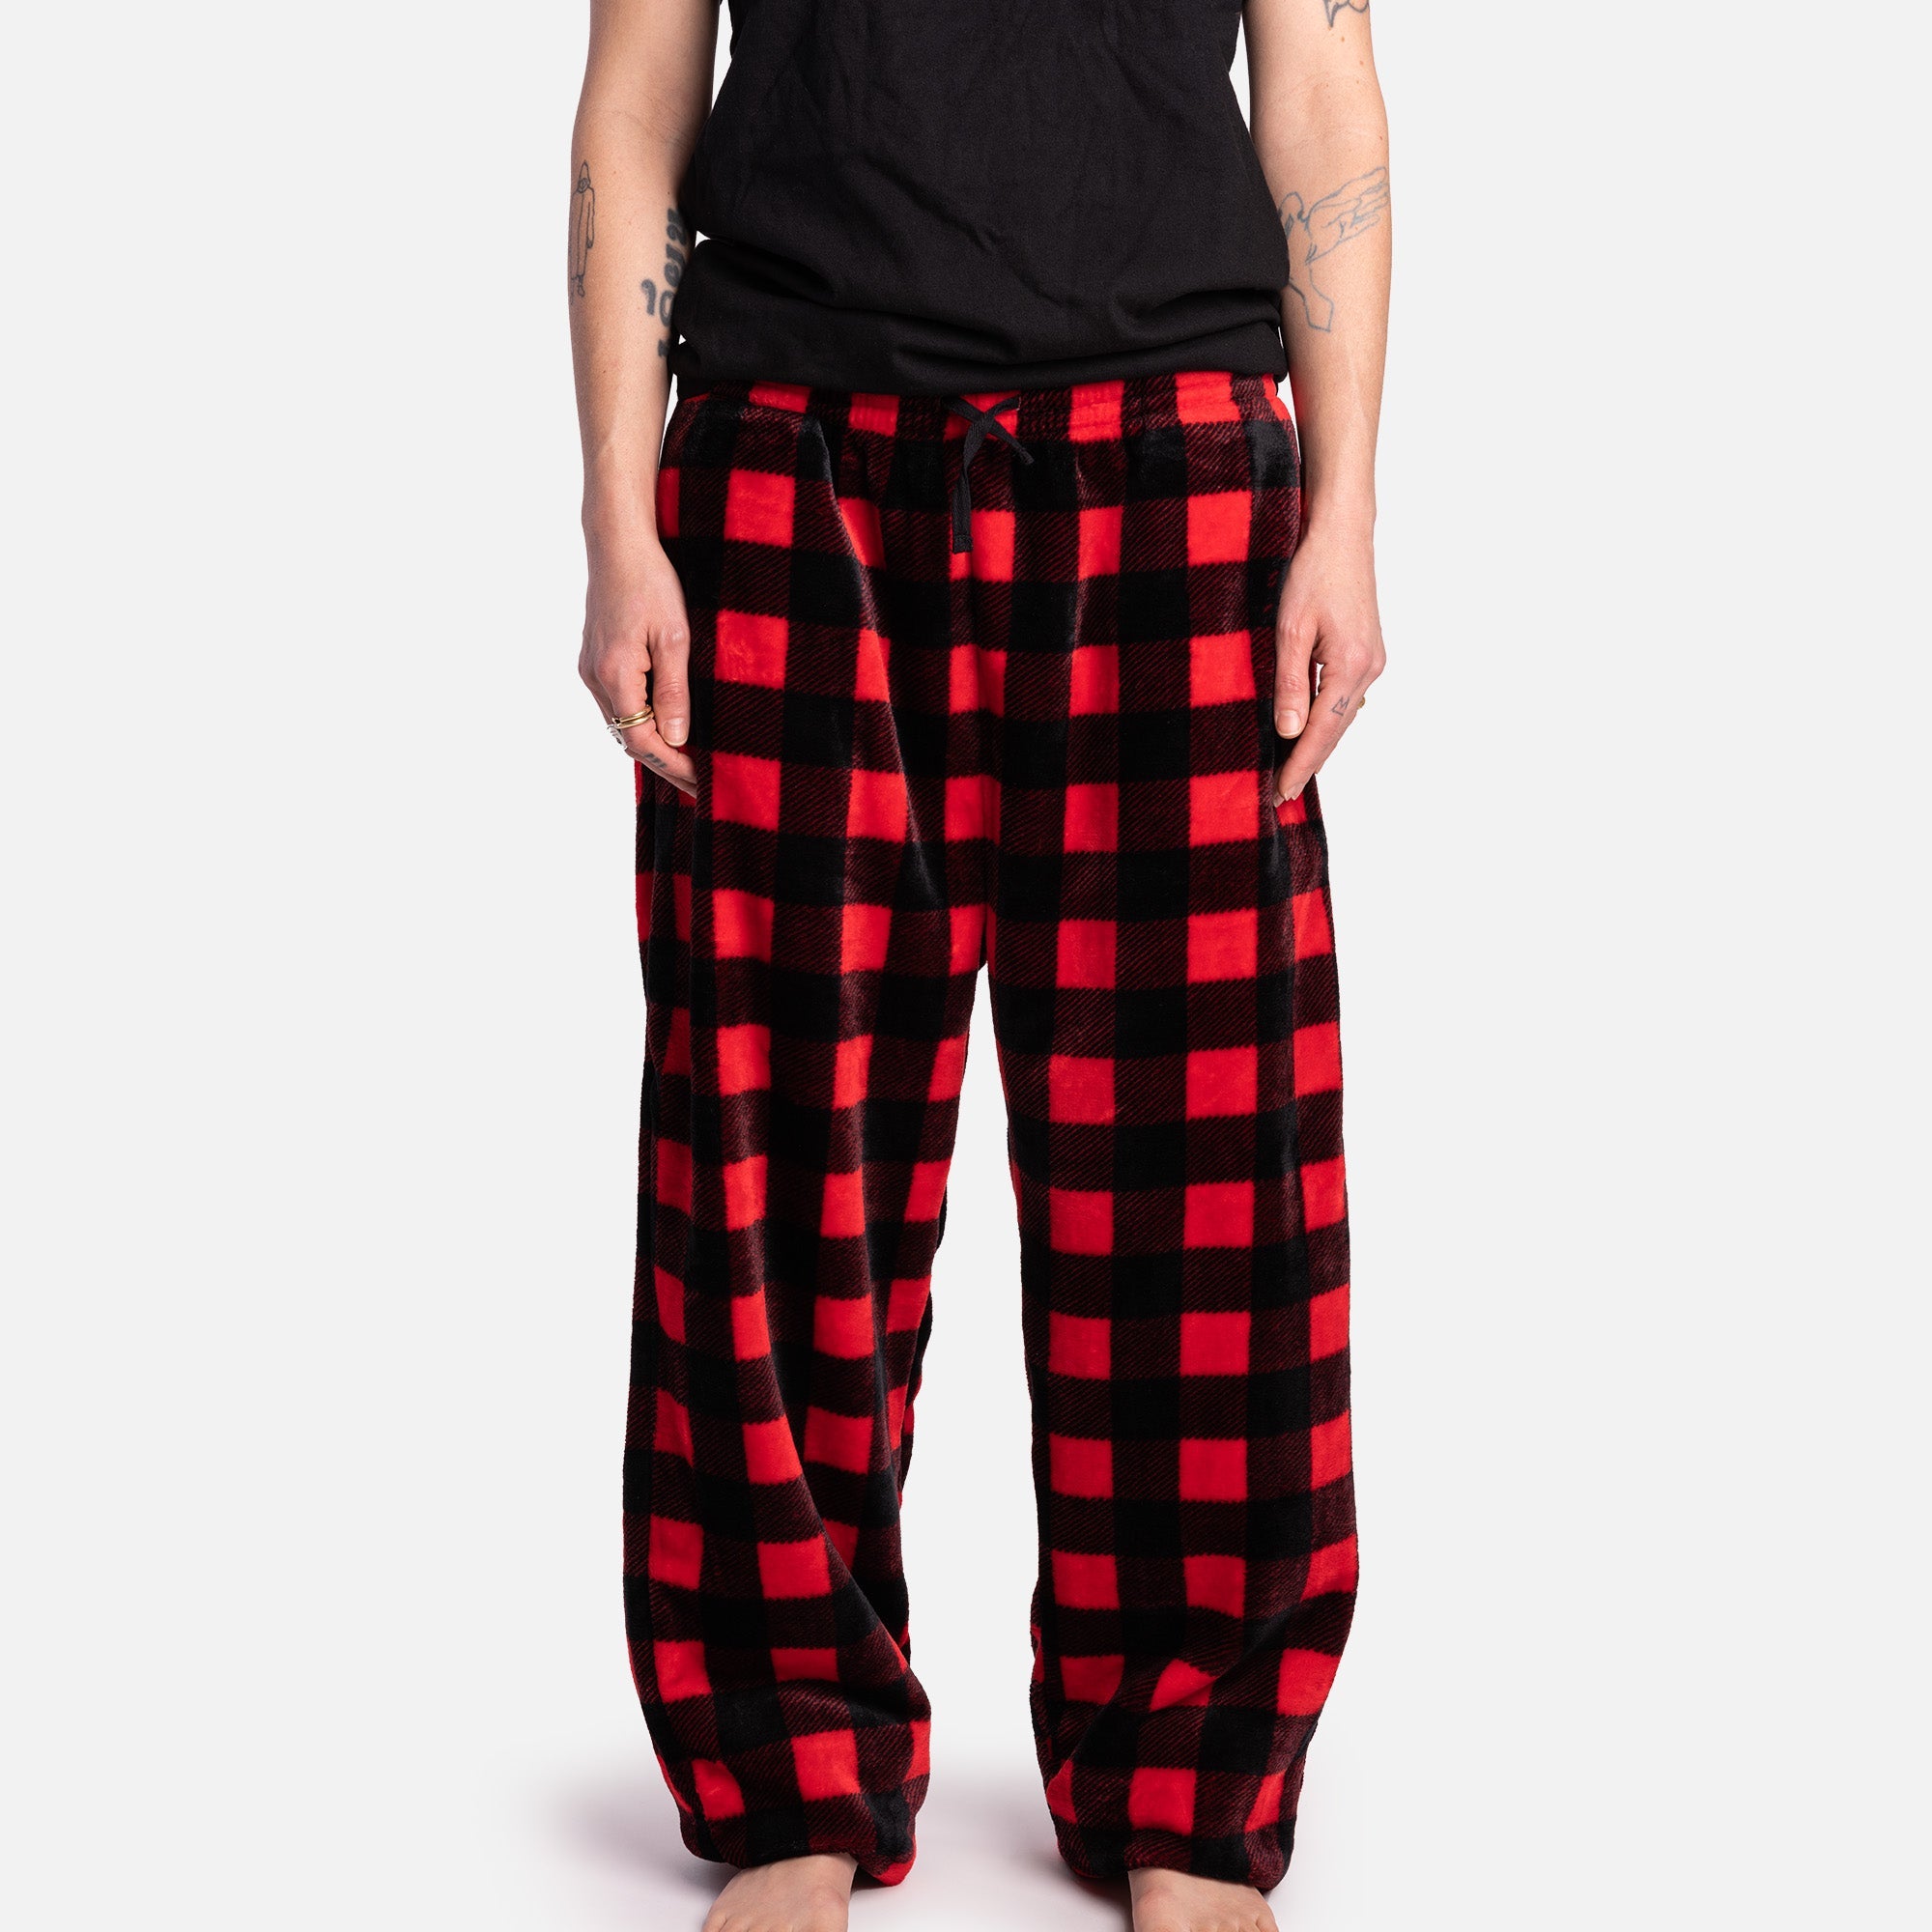 Matching Human Pajama - Buffalo Plaid Red – Silver Paw